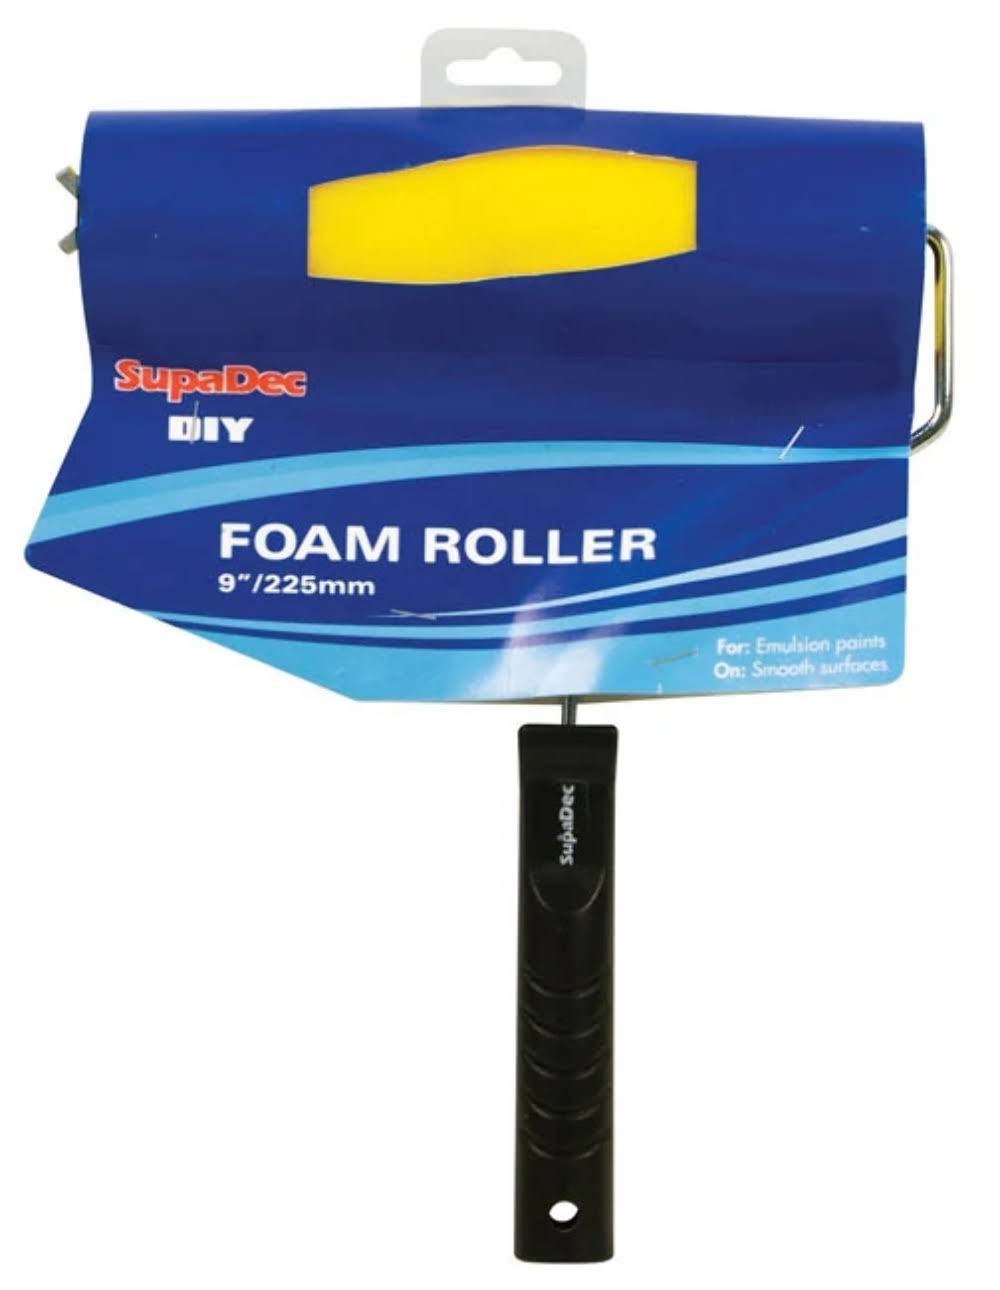 SupaDec Foam Roller Complete - 9inch - 255mm